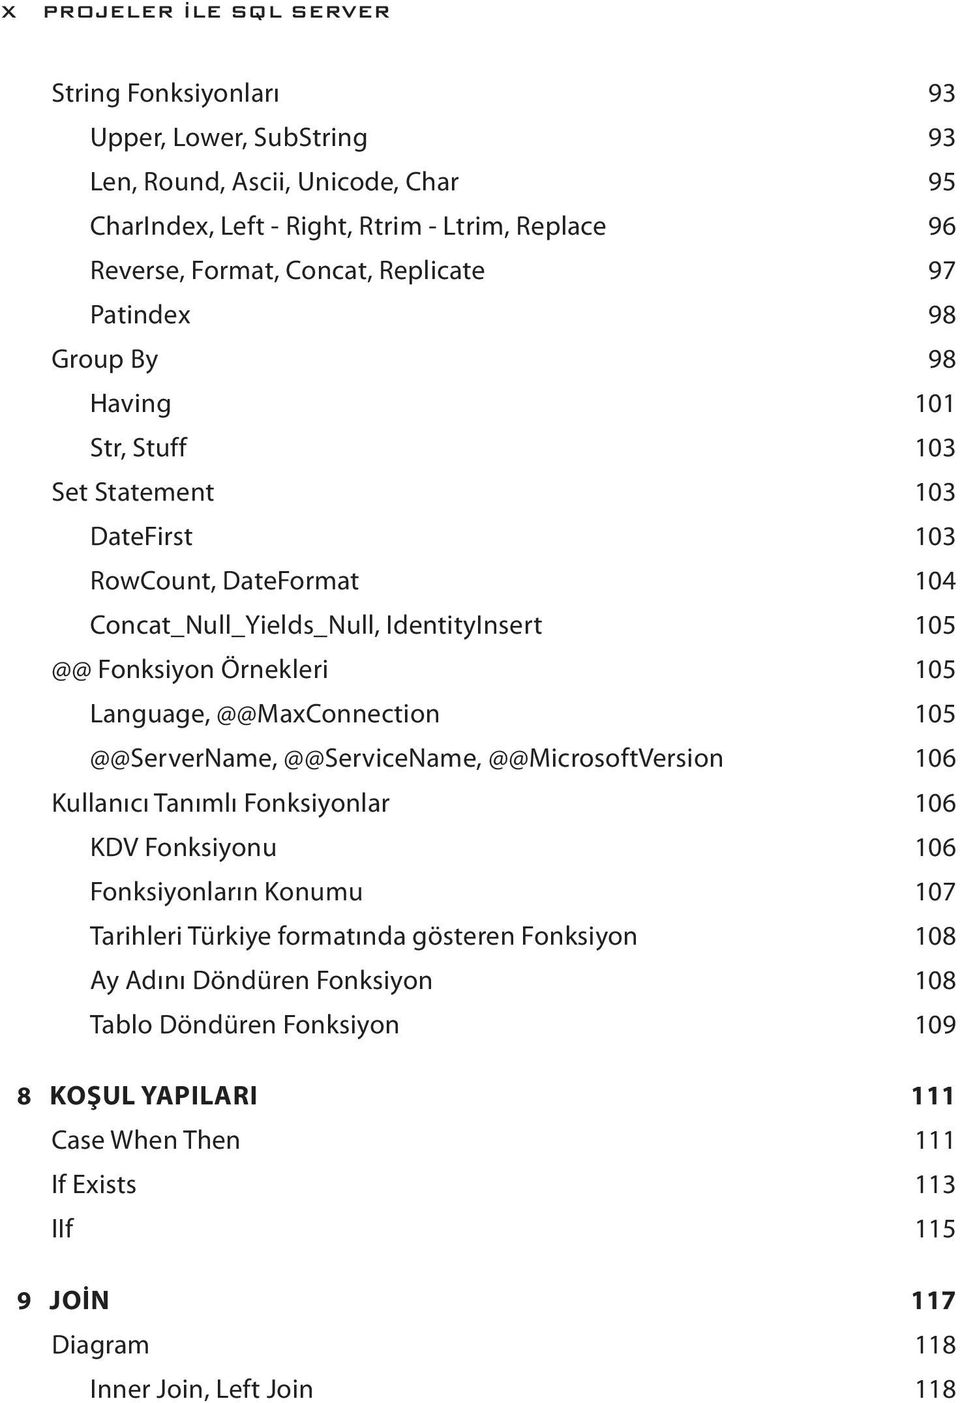 Language, @@MaxConnection 105 @@ServerName, @@ServiceName, @@MicrosoftVersion 106 Kullanıcı Tanımlı Fonksiyonlar 106 KDV Fonksiyonu 106 Fonksiyonların Konumu 107 Tarihleri Türkiye formatında